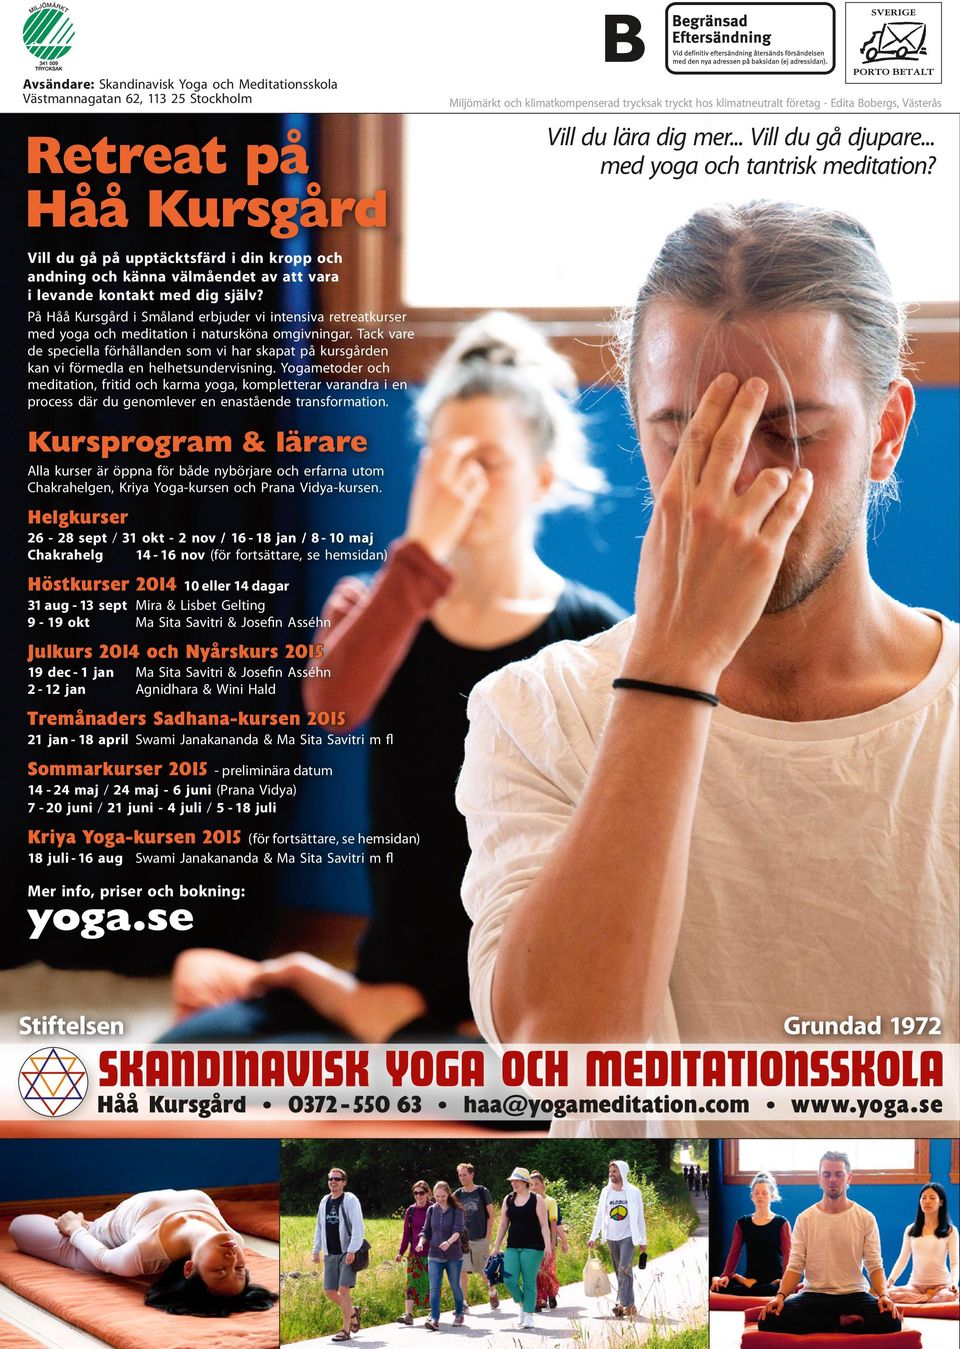 På i Småland erbjuder vi intensiva retreatkurser med yoga och meditation i natursköna omgivningar.